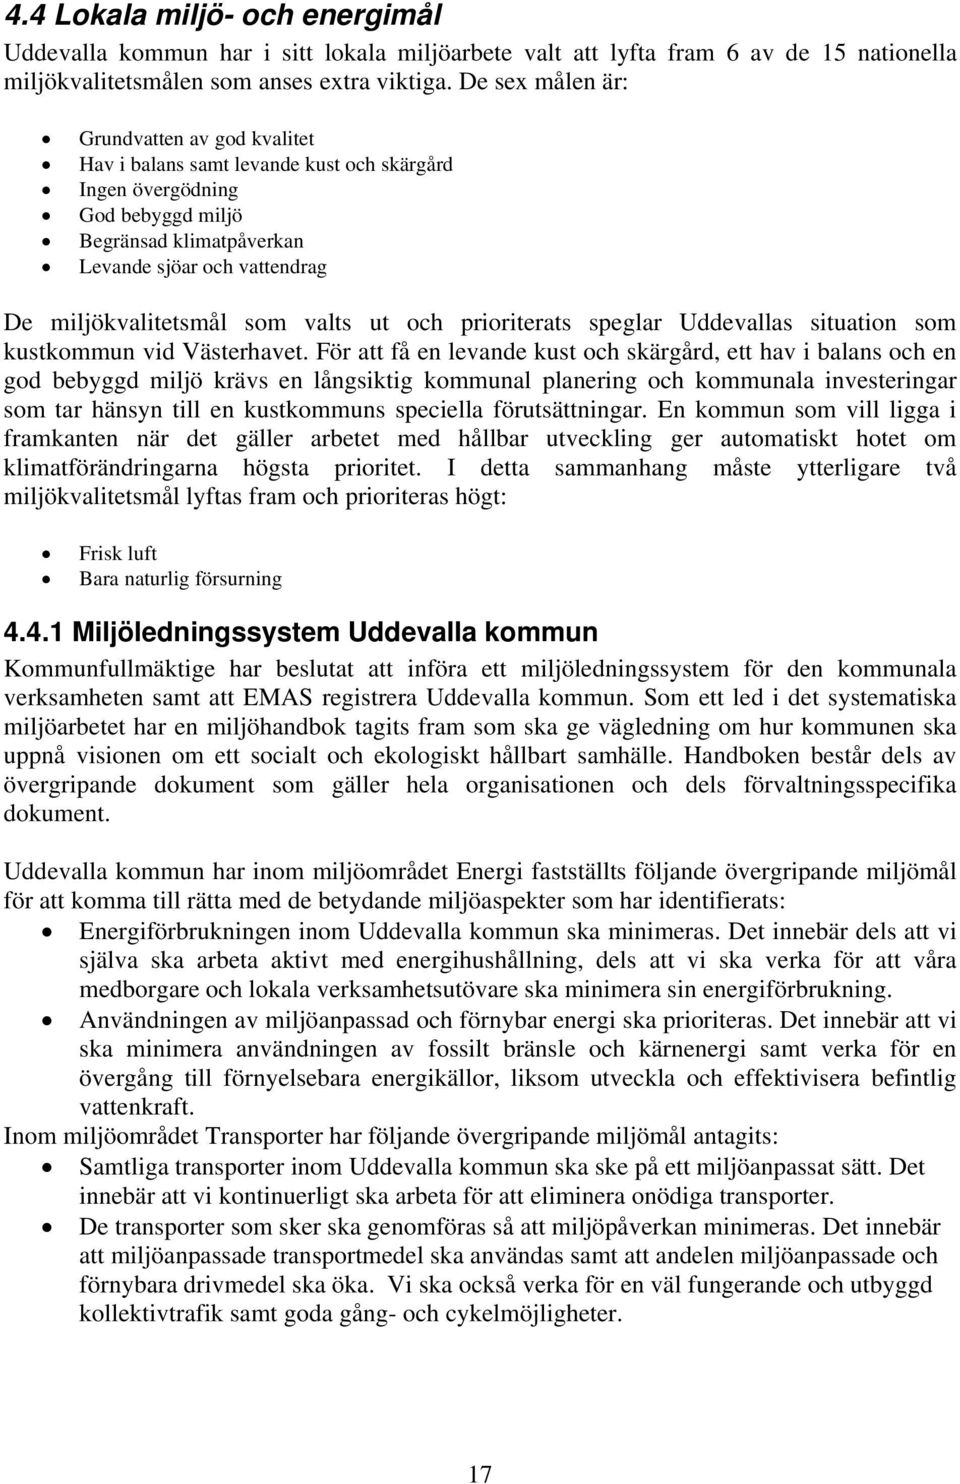 som valts ut och prioriterats speglar Uddevallas situation som kustkommun vid Västerhavet.